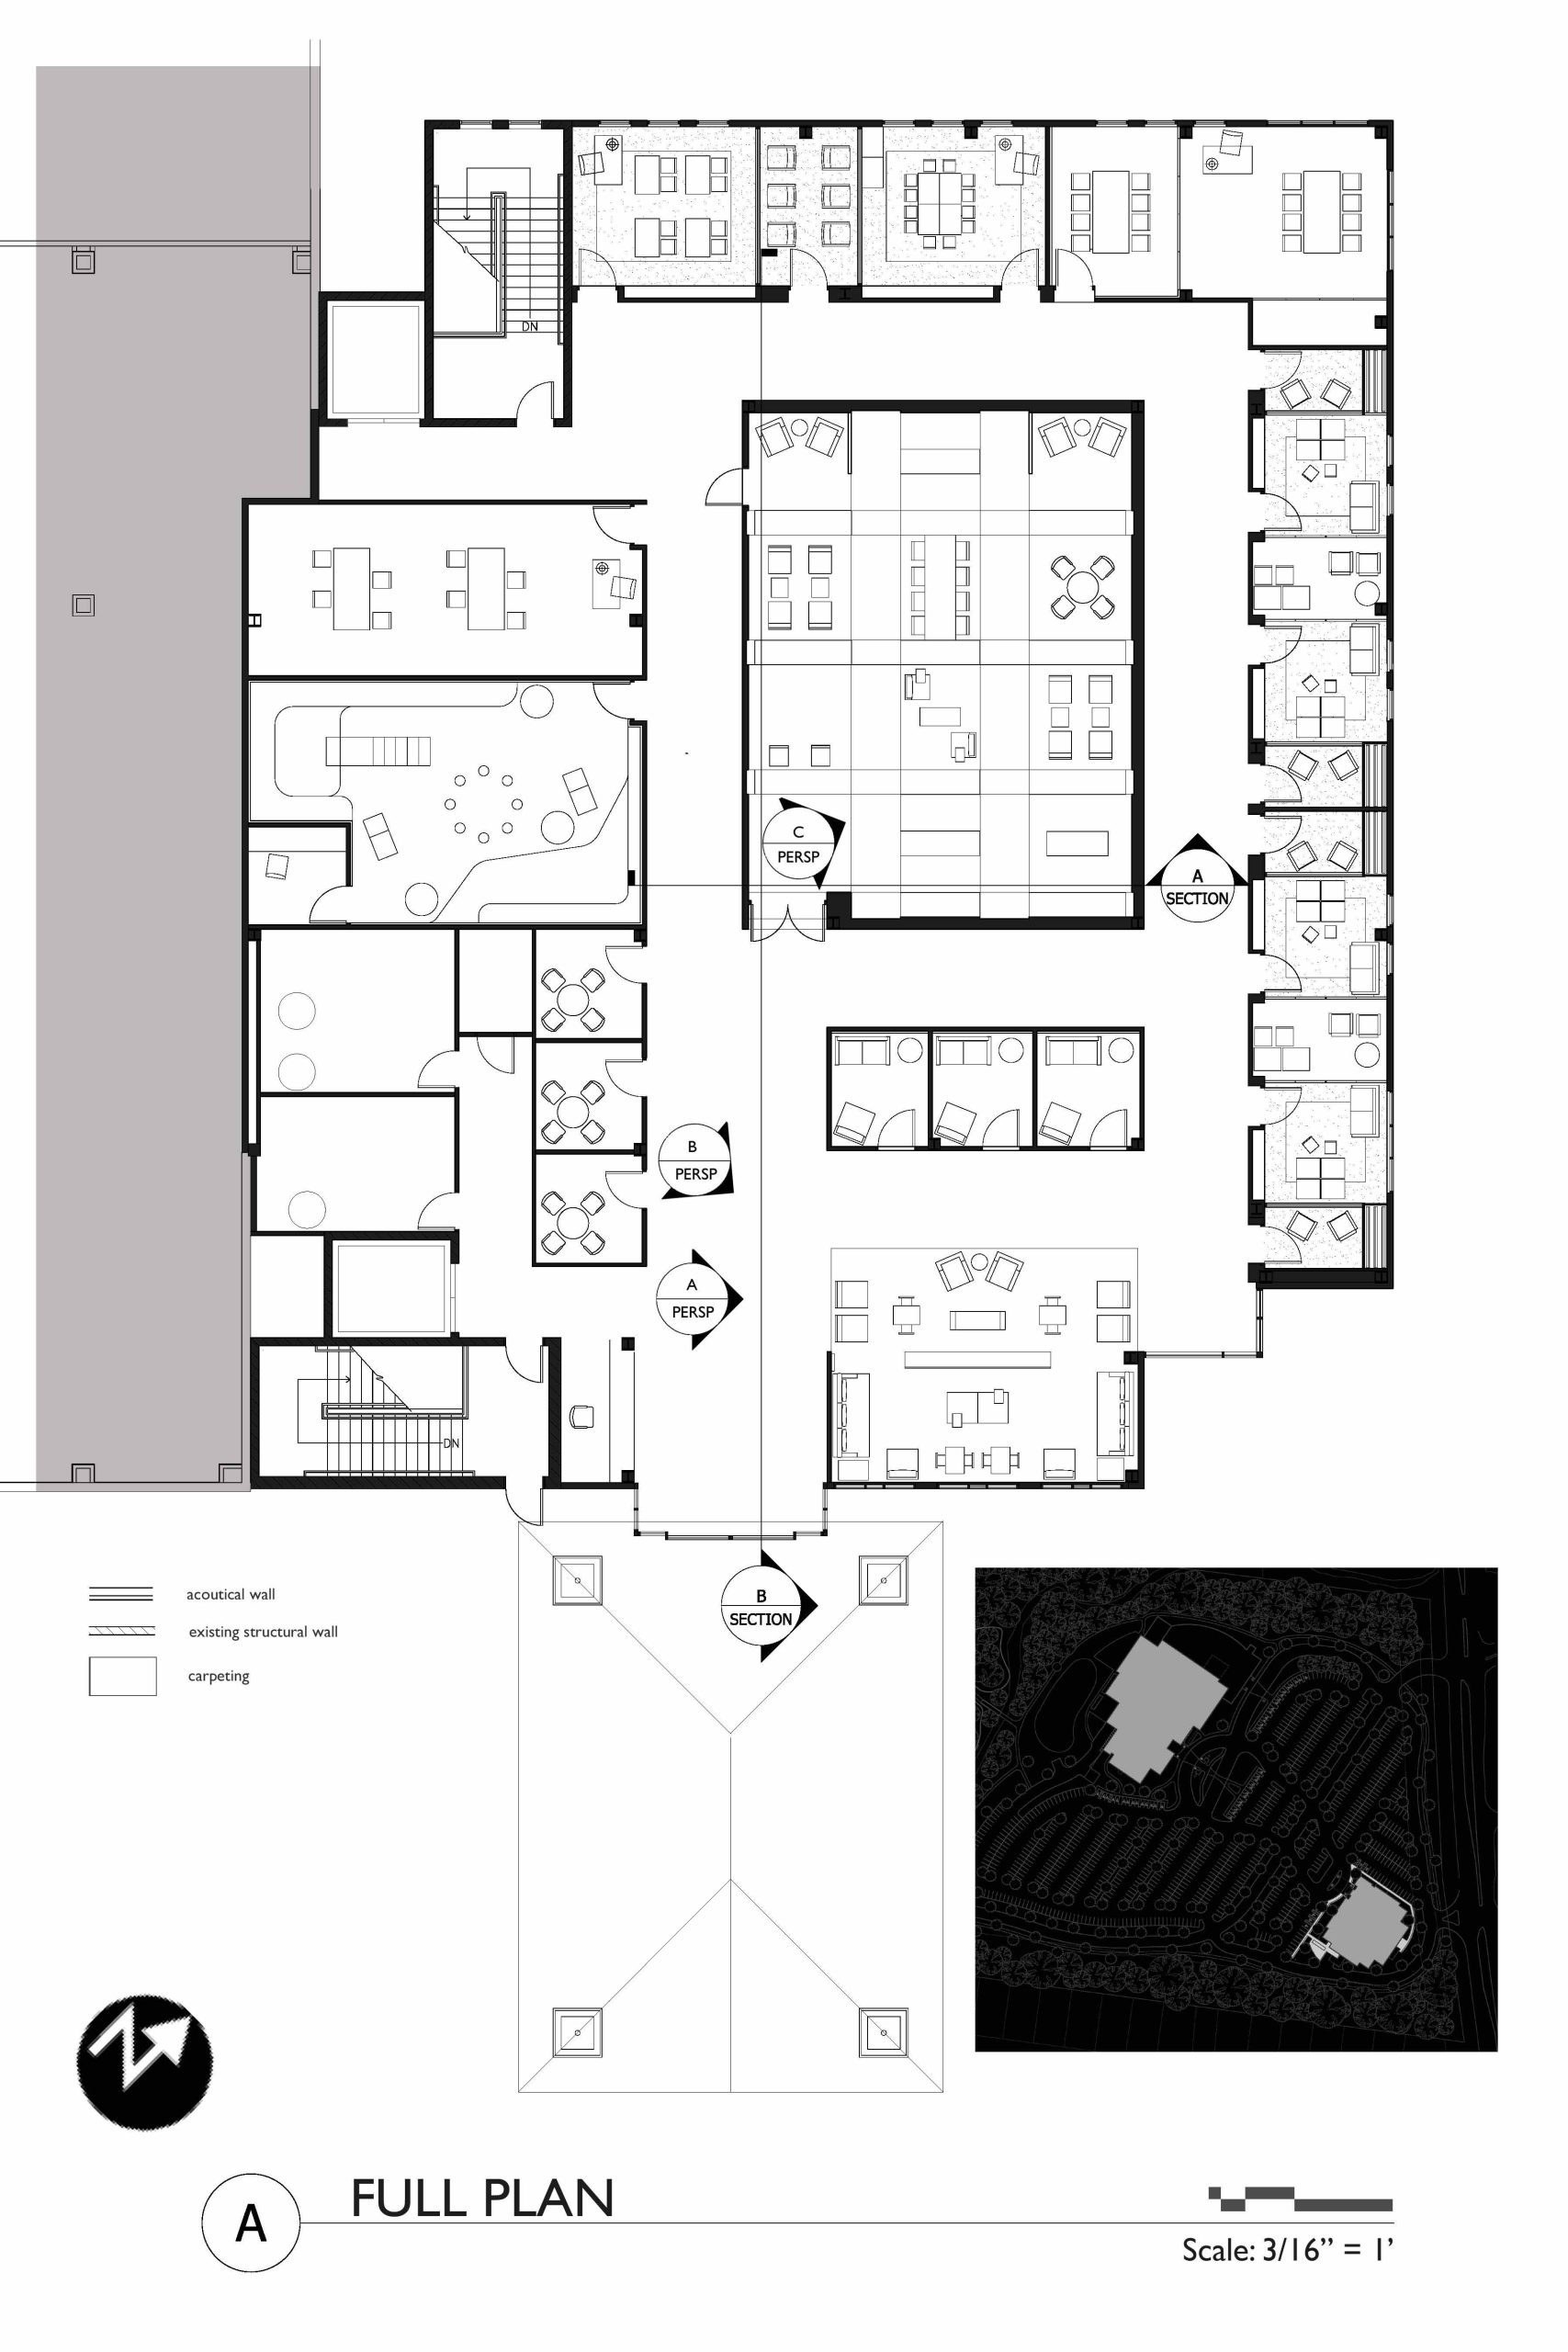 Asd Floor Plan 2018 floorplans.click